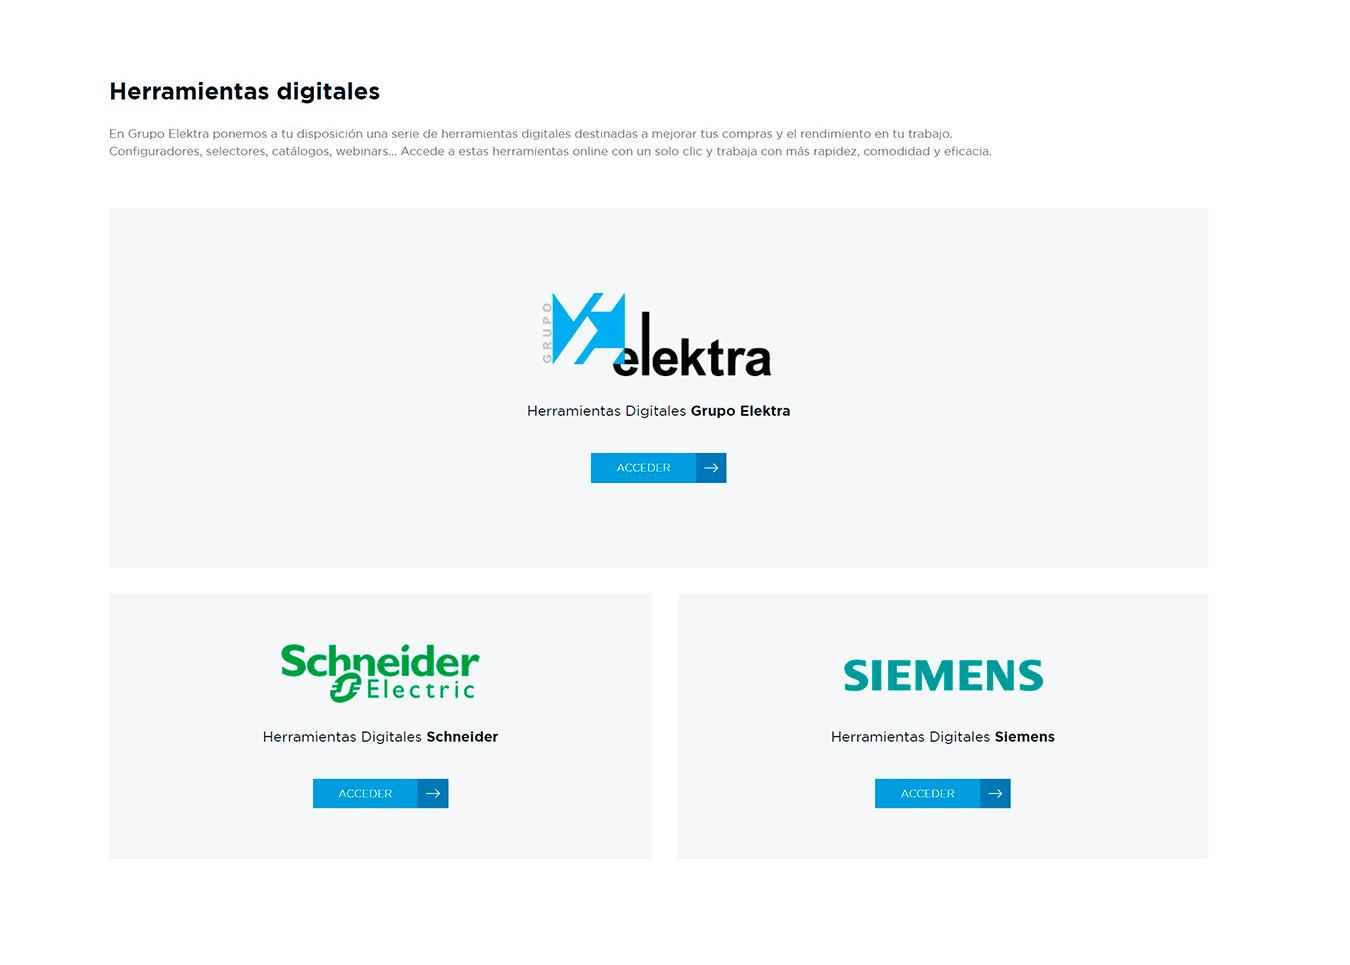 Gif sobre las herramientas digitales de Siemens para nuestra web de clientes